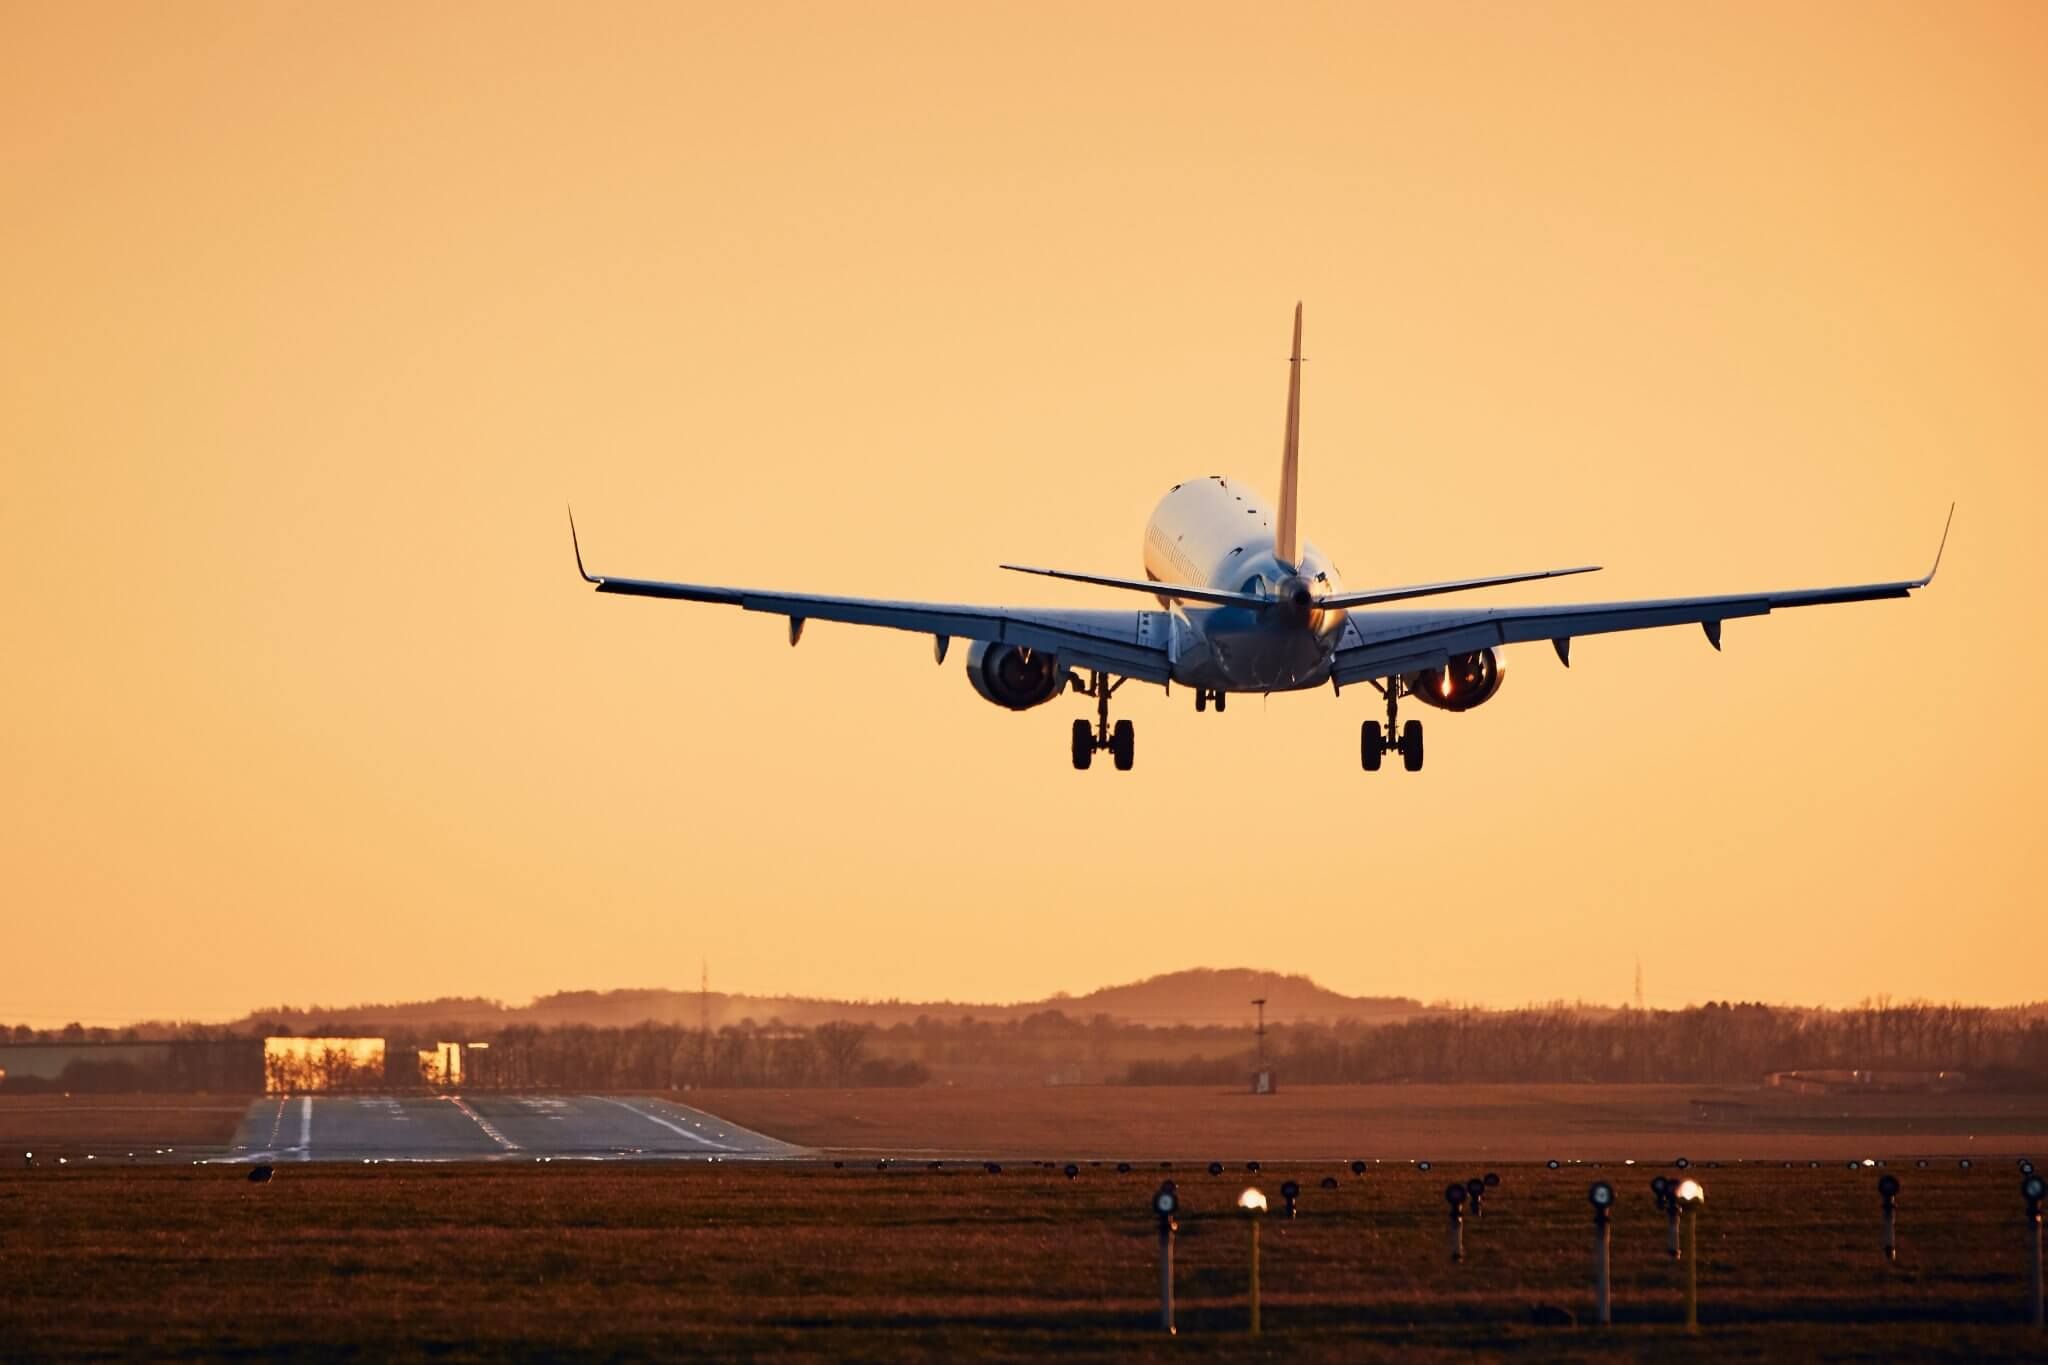 Flugpreisanalyse: So viel kosten Flüge zu beliebten Reisezielen